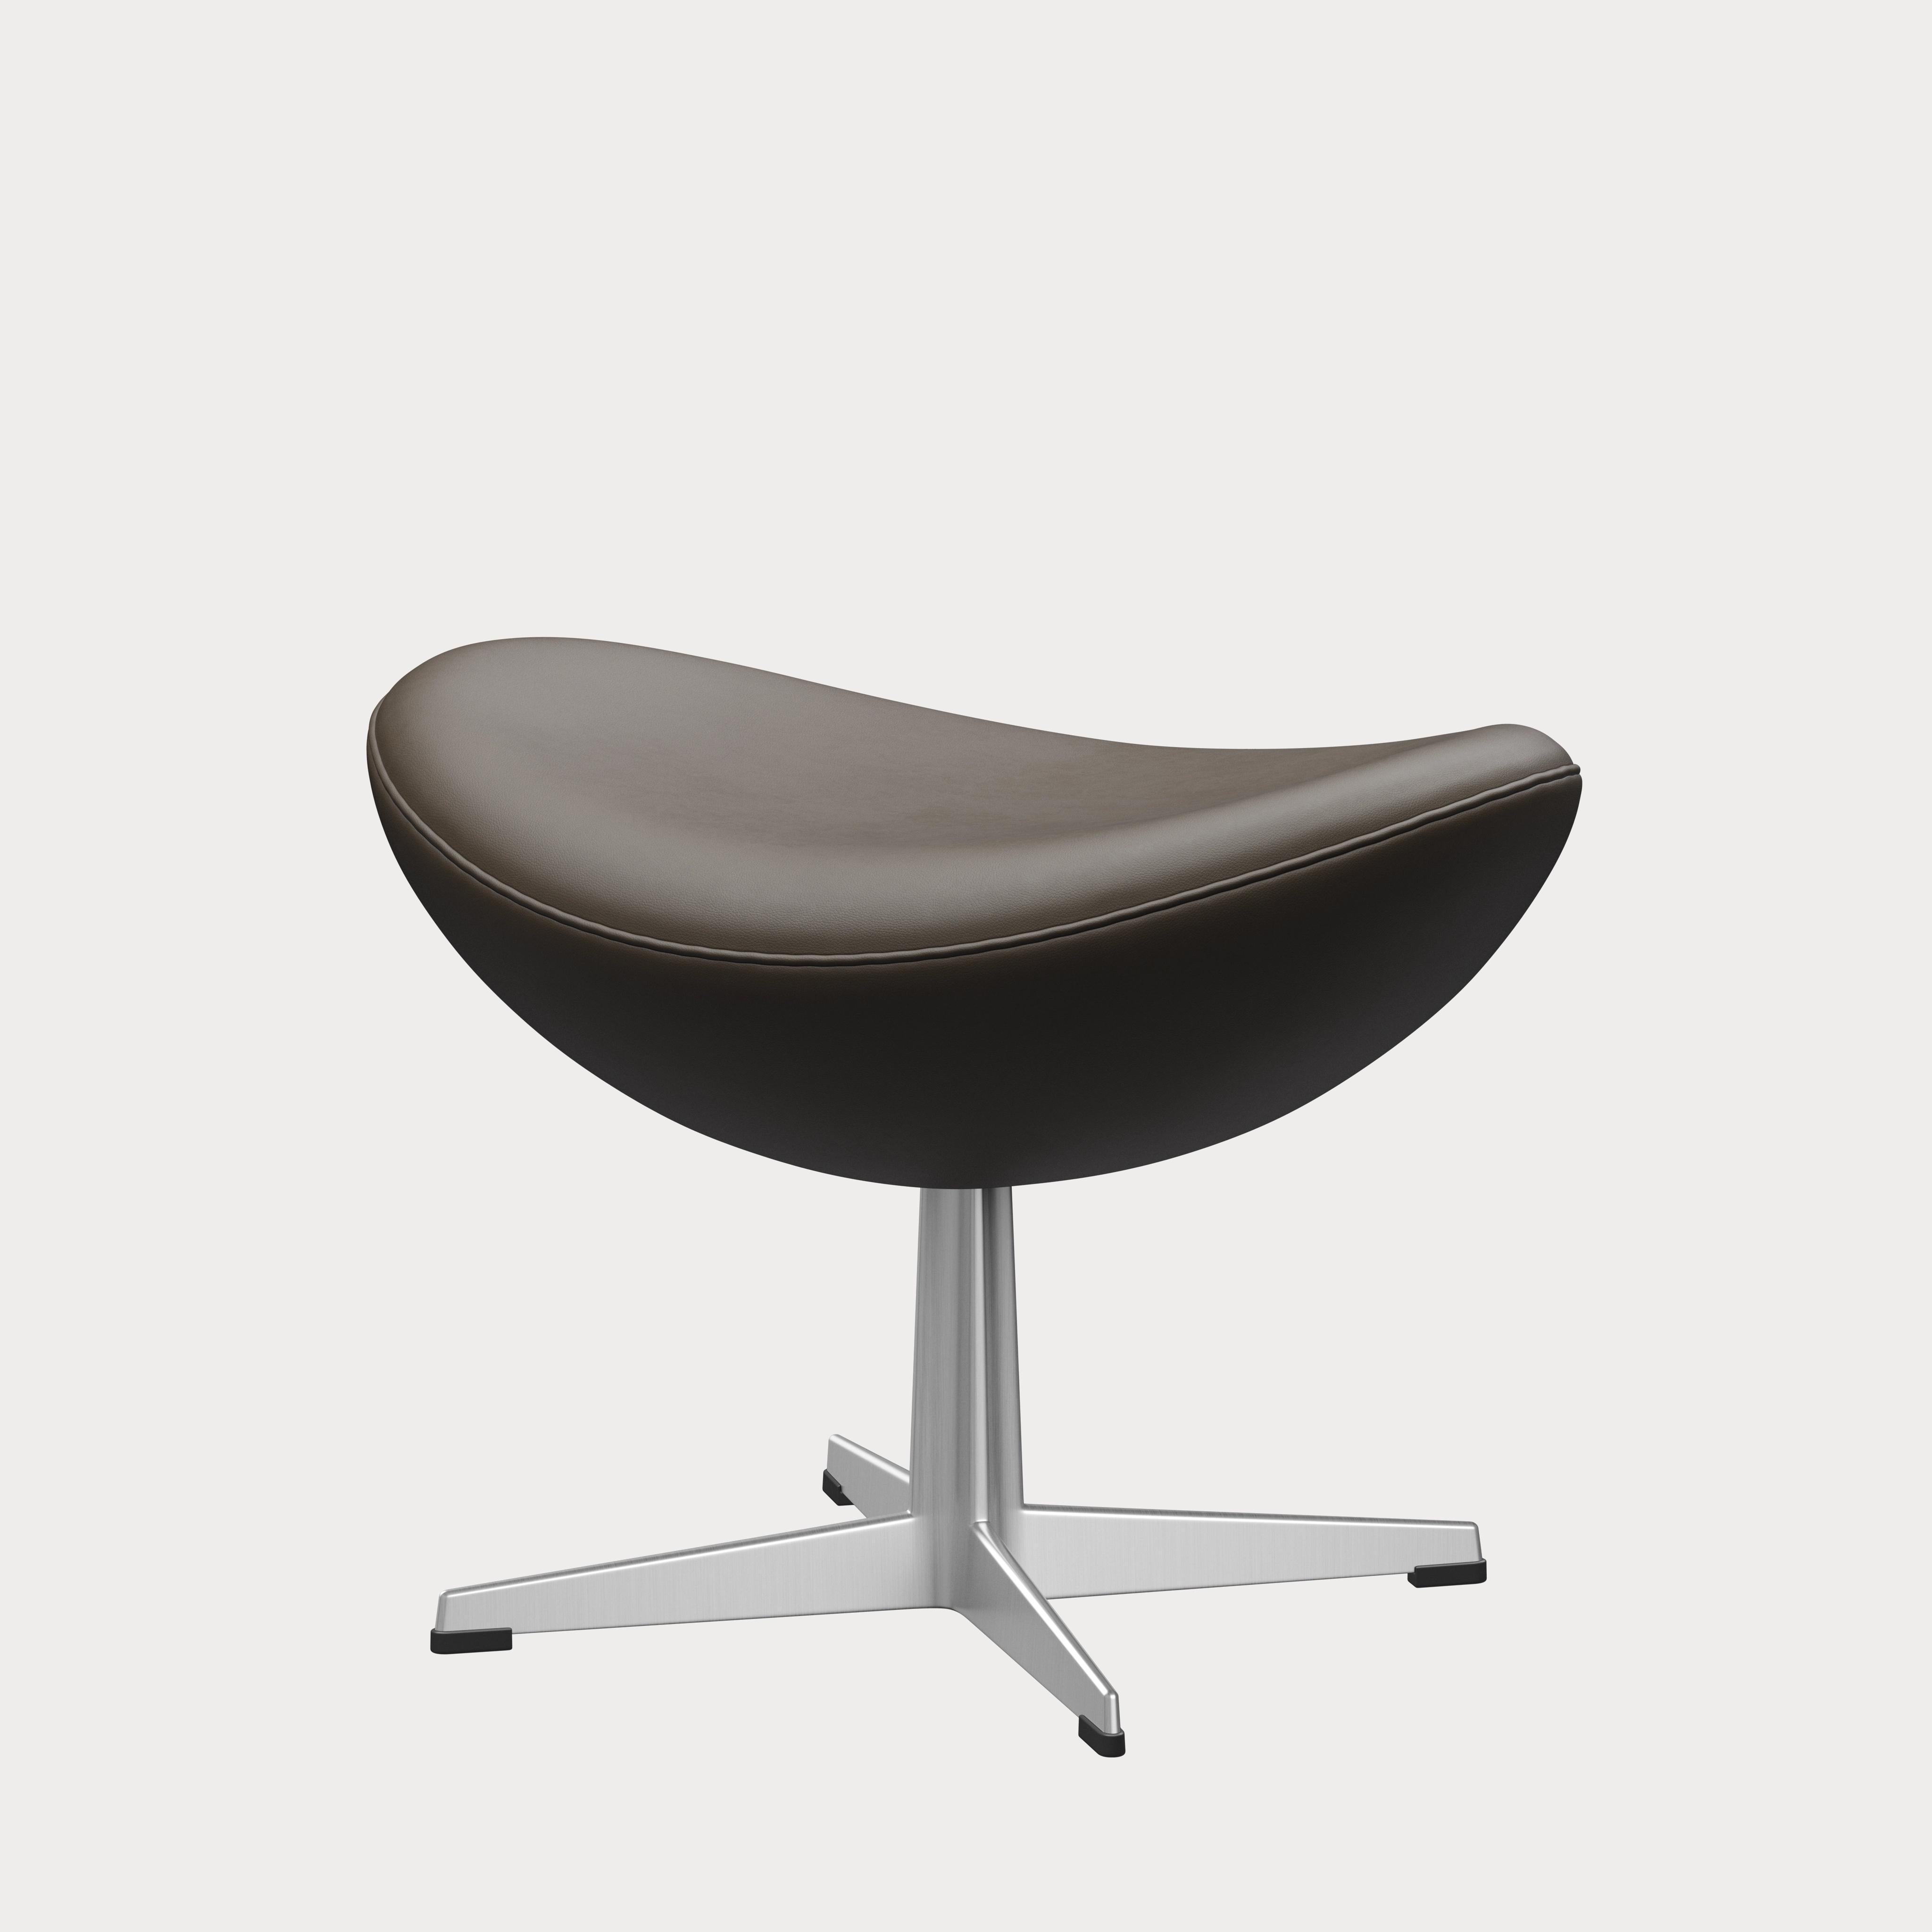 Arne Jacobsen 'Egg' Footstool for Fritz Hansen in Leather Upholstery (Cat. 3) For Sale 5